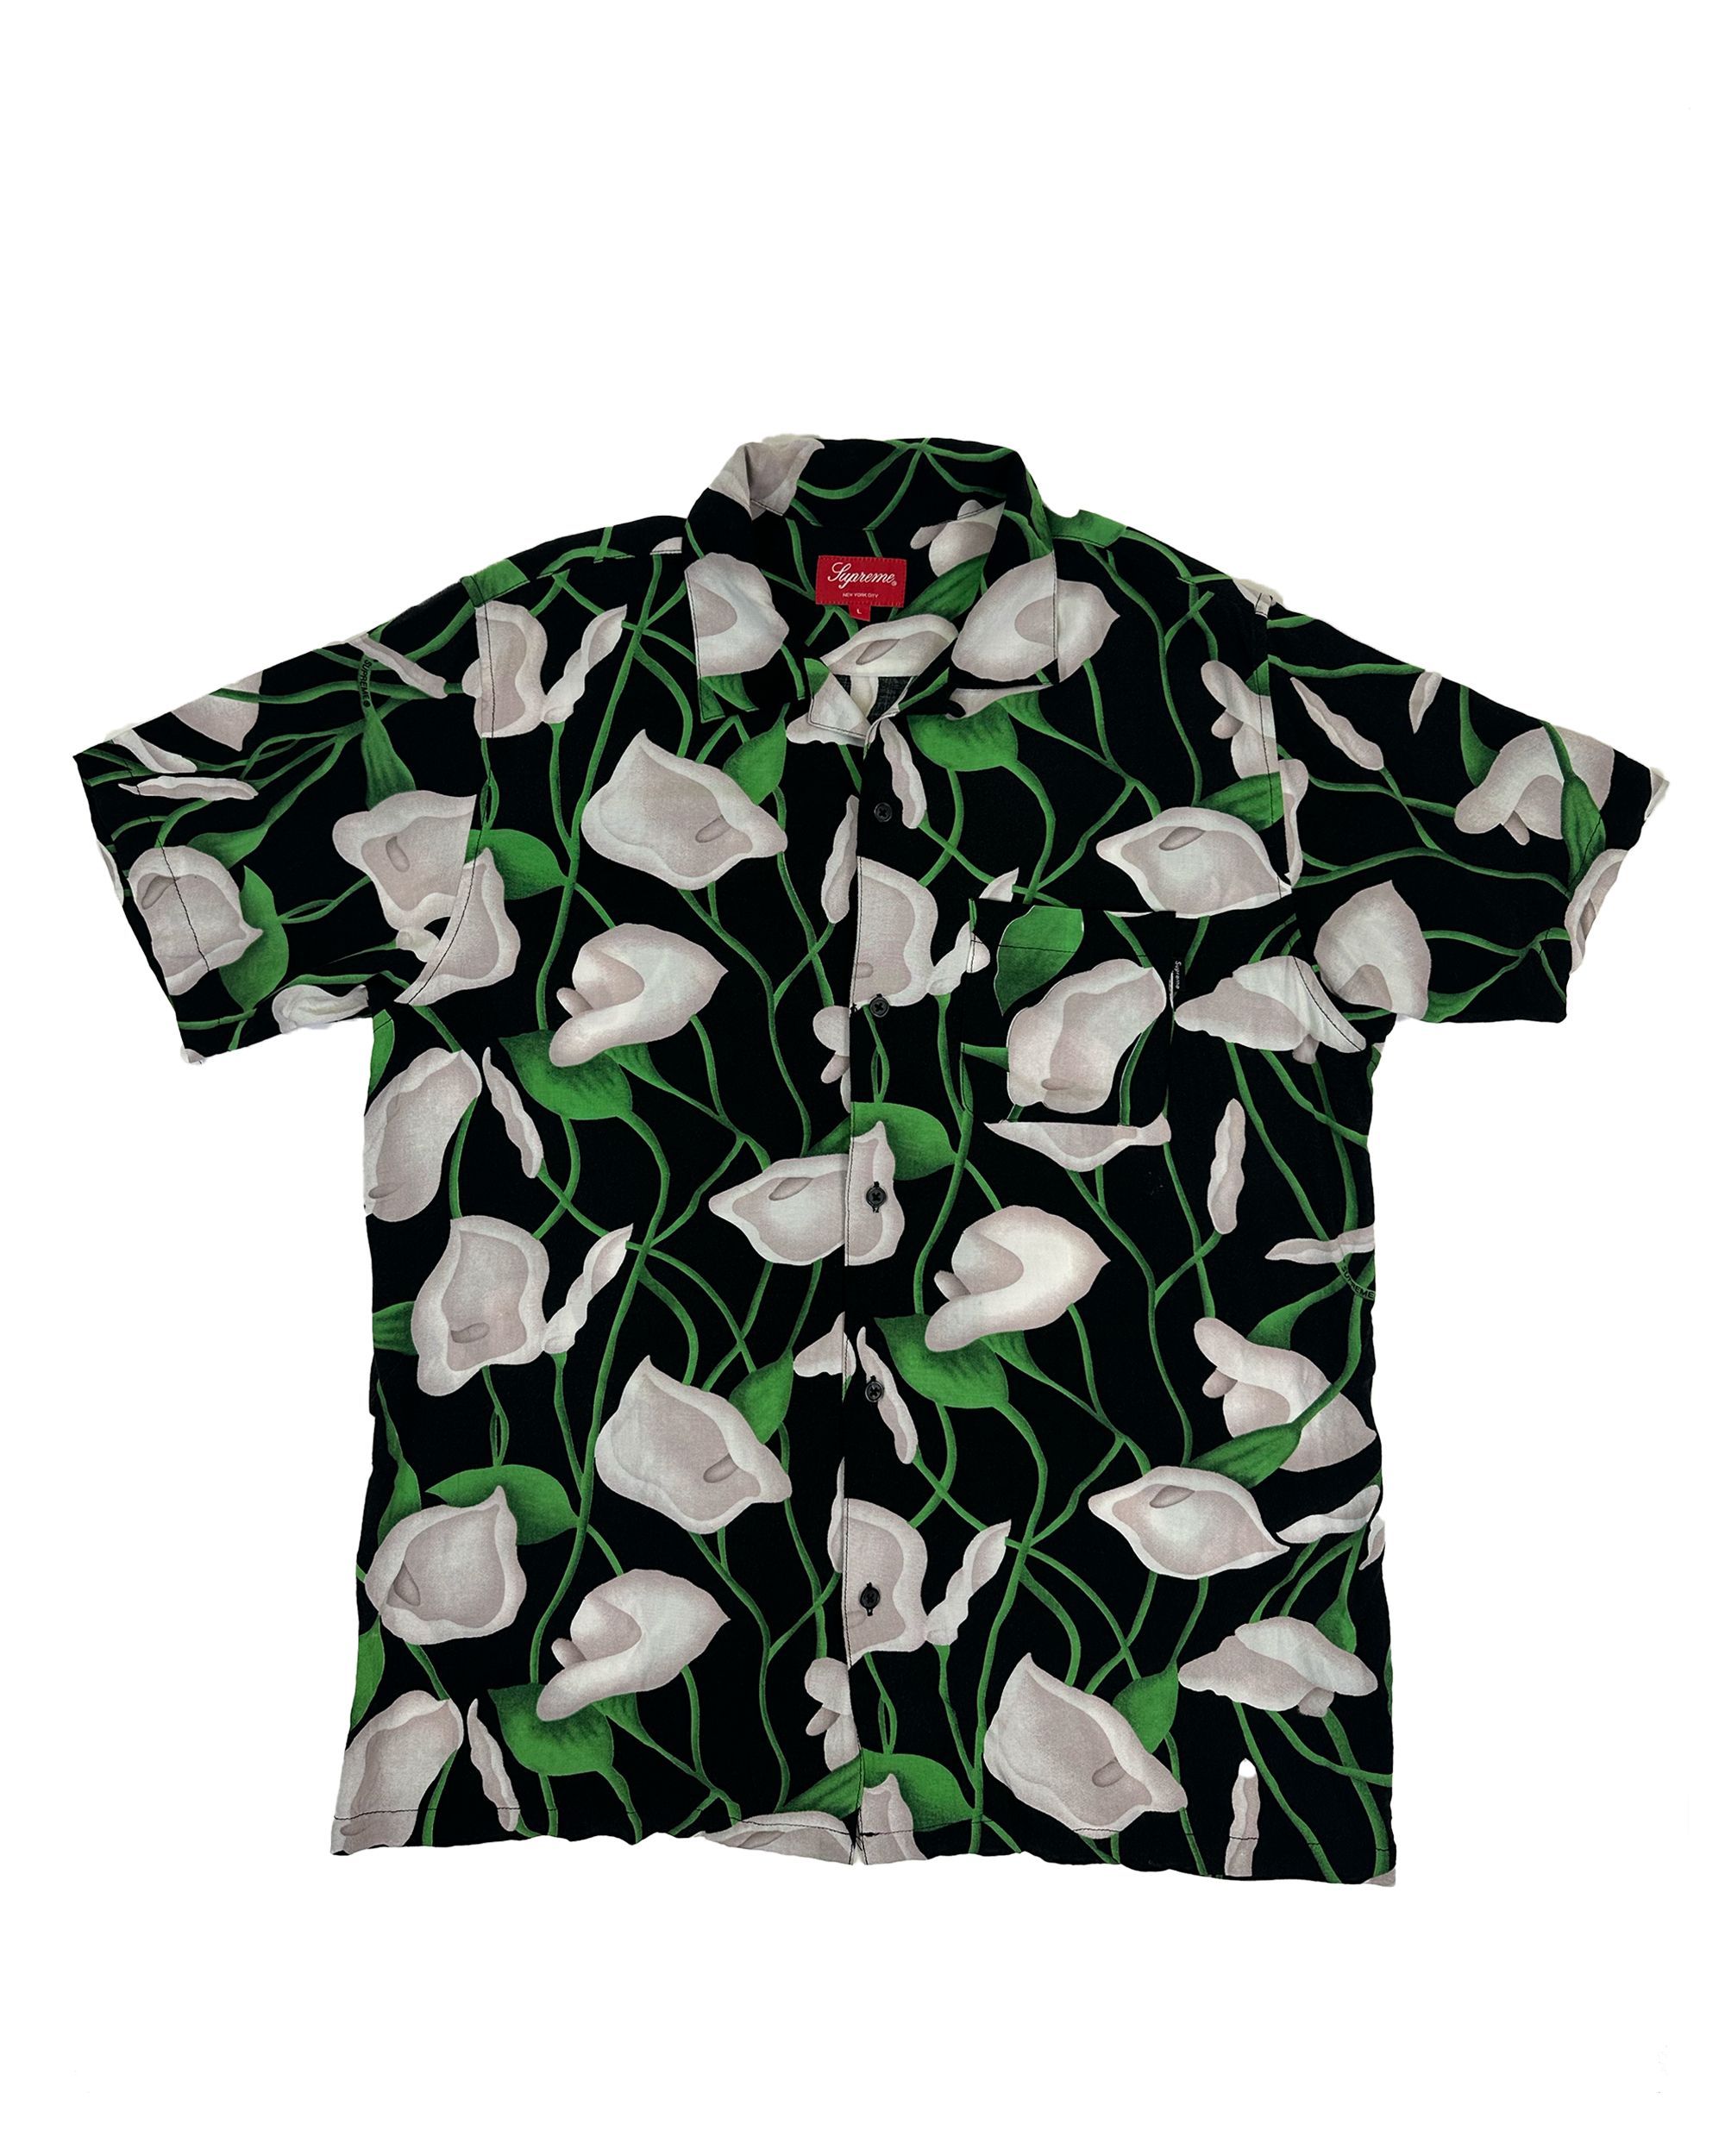 Supreme Supreme Lily Rayon Shirt Black/Green | Grailed